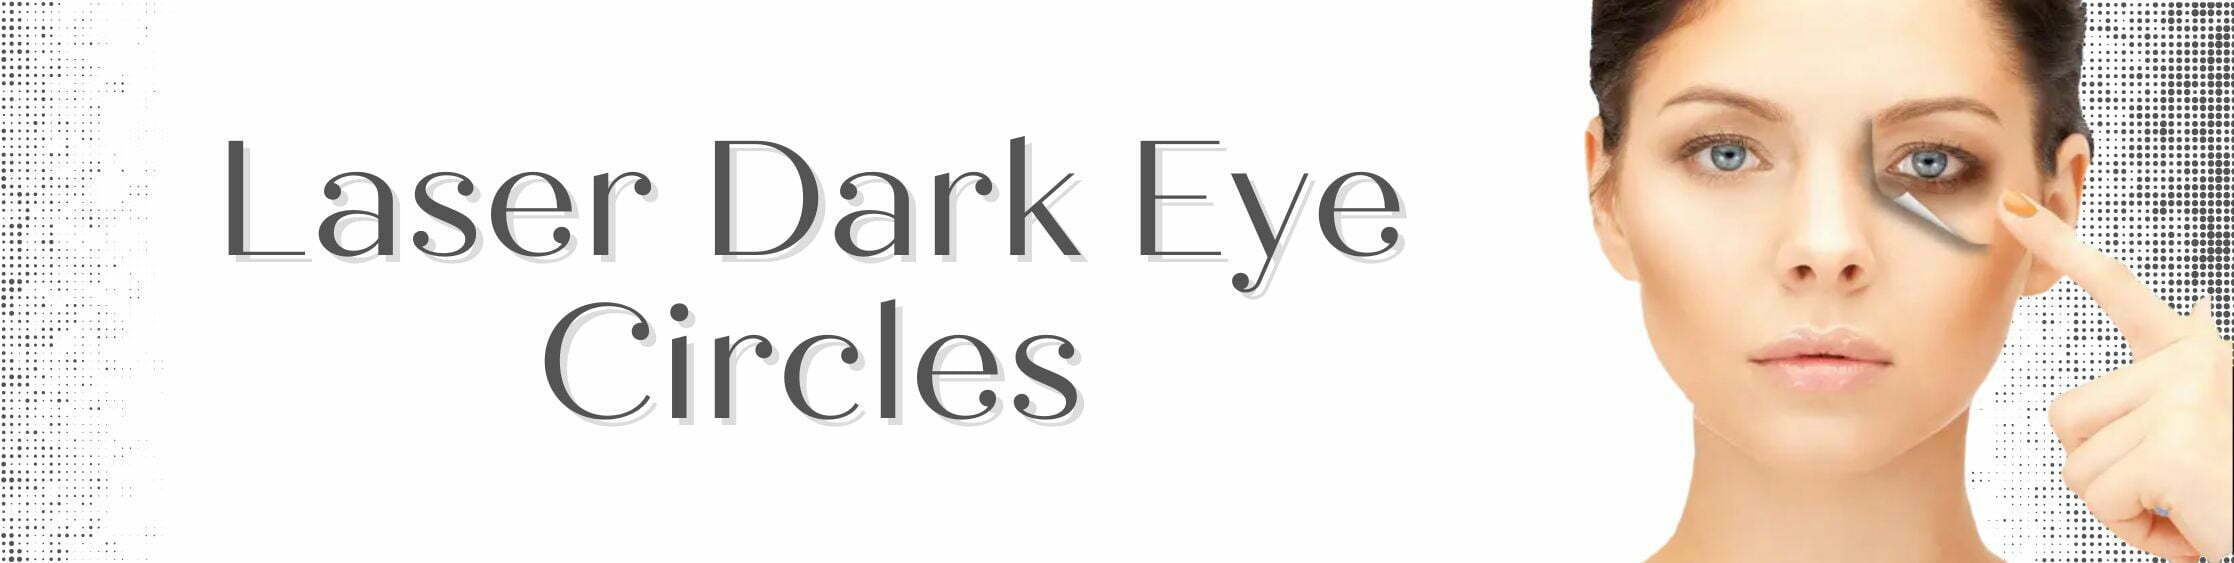 Laser Dark Eye Circles